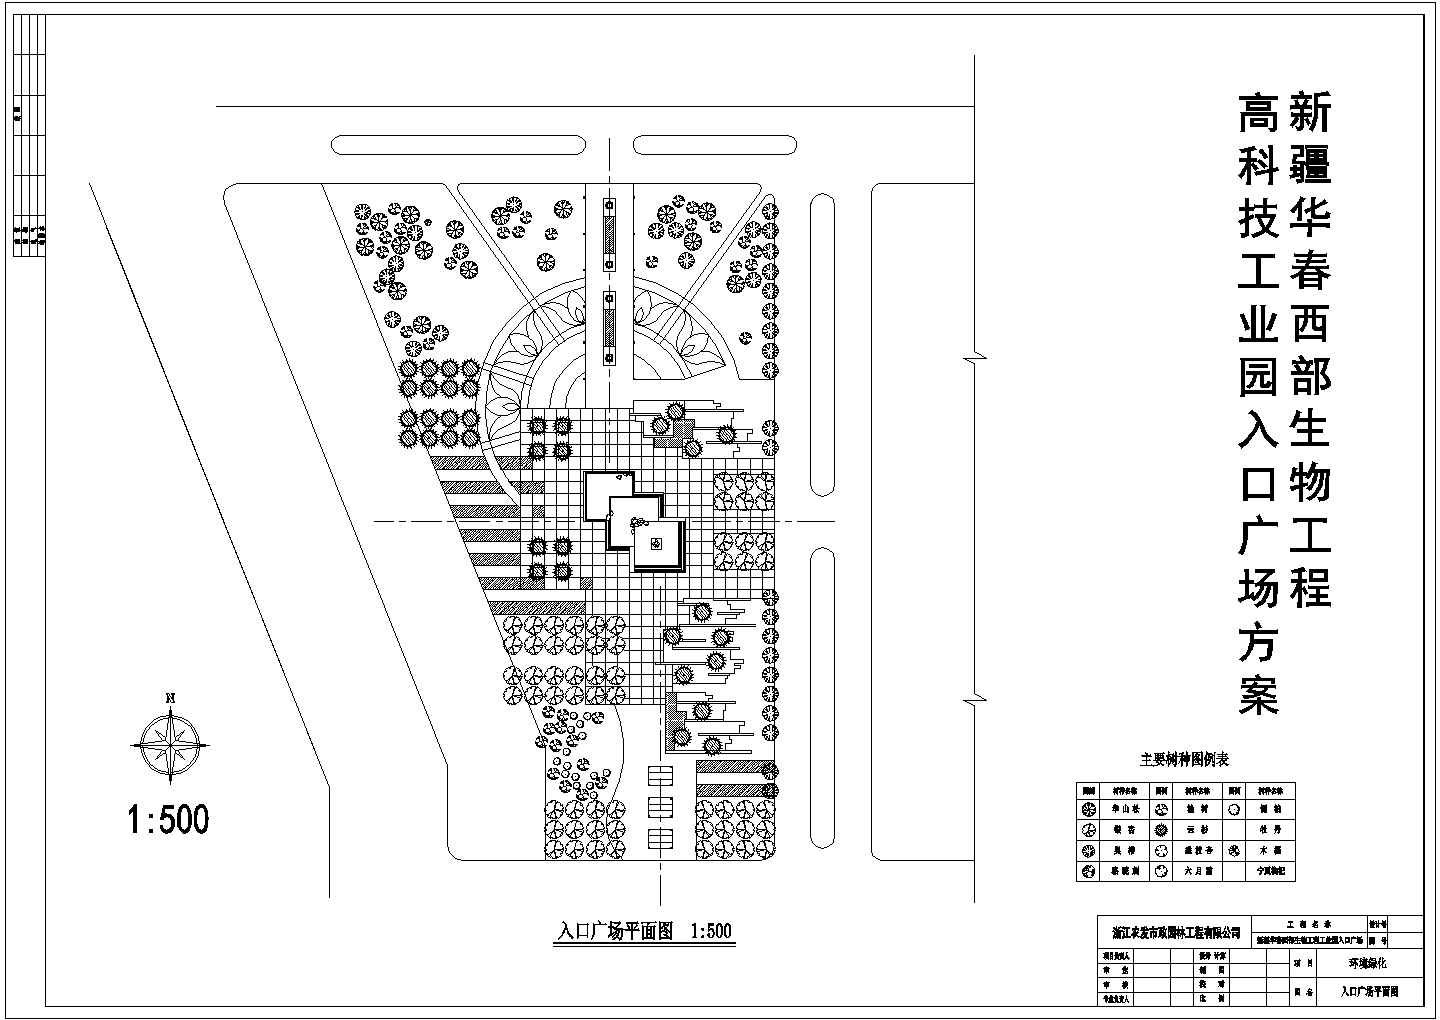 新疆华春文化广场小型投标方案设计图